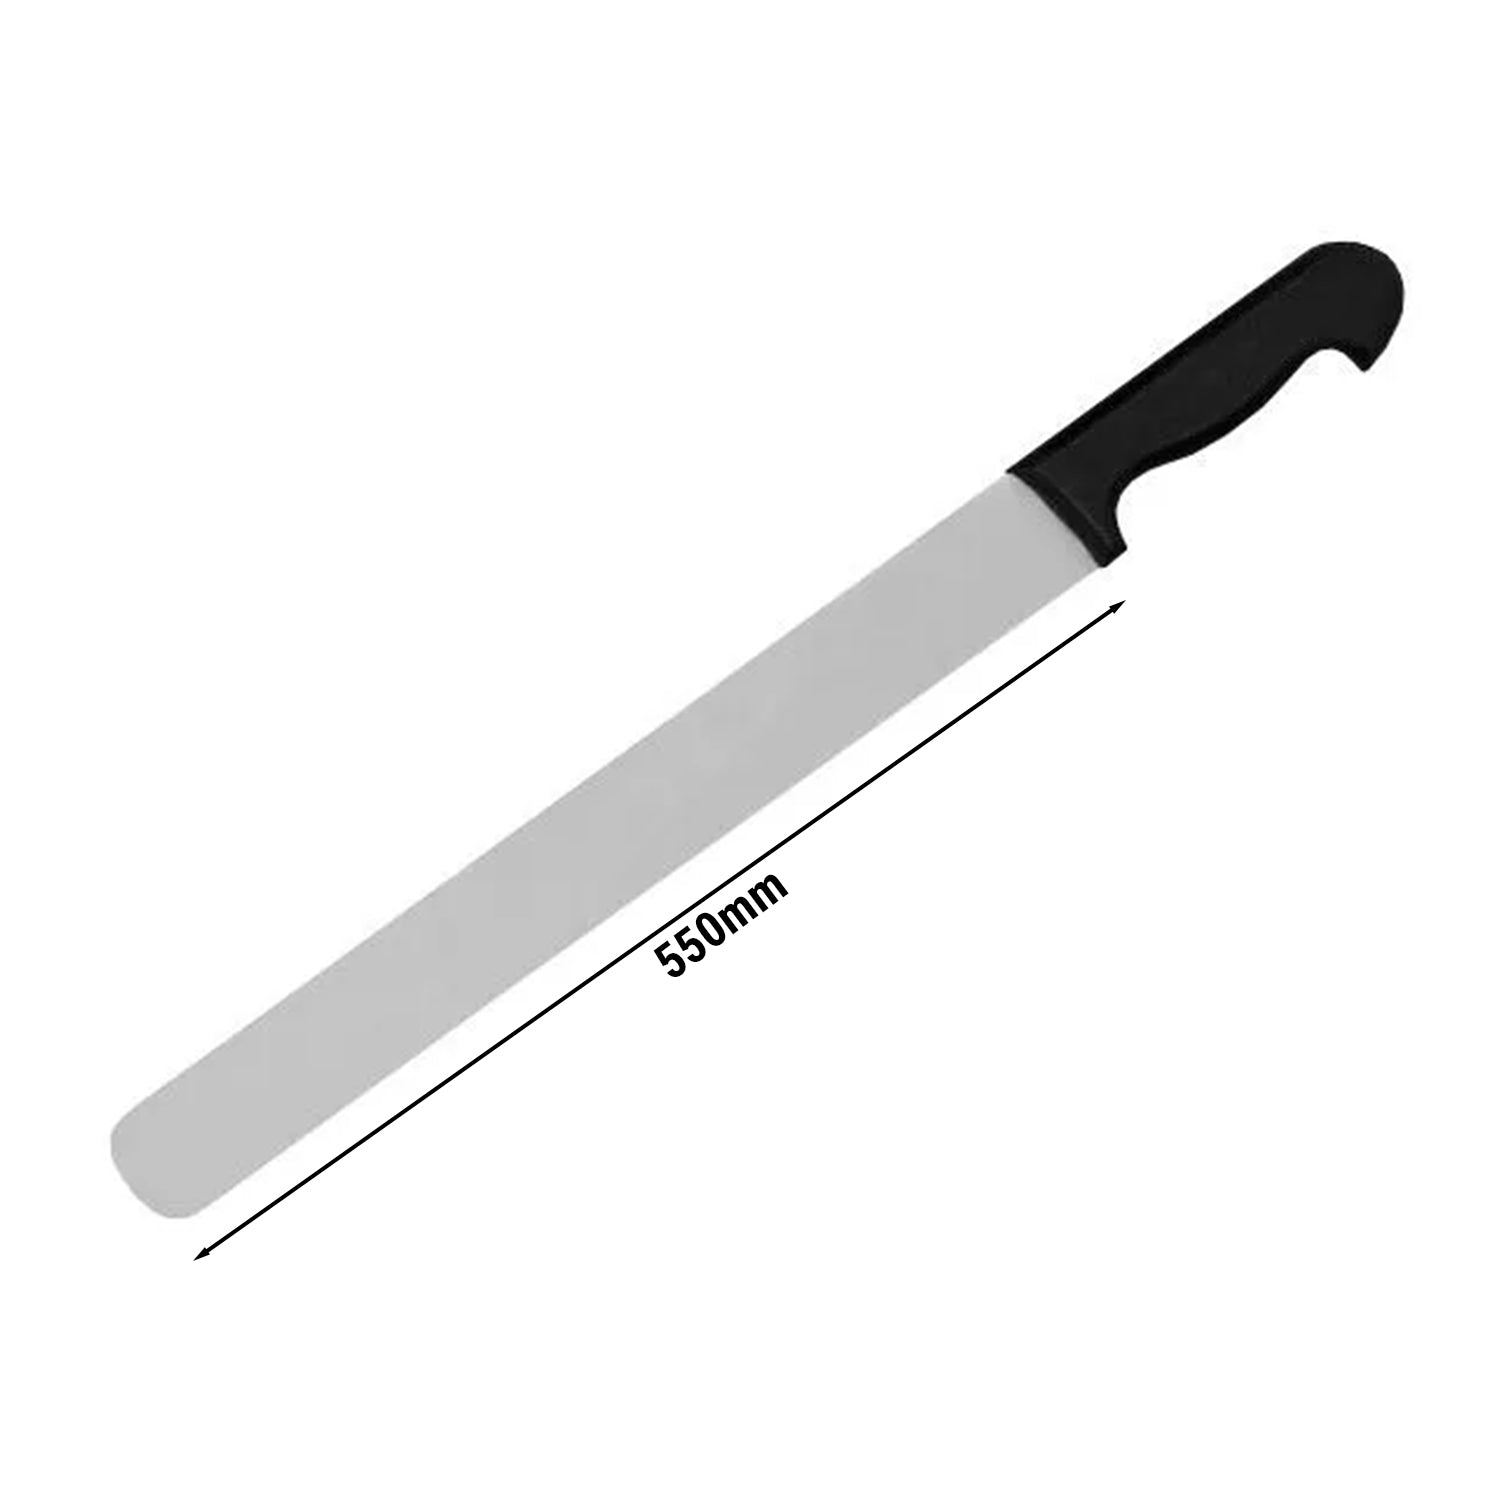 Kebab knife with black plastic handle